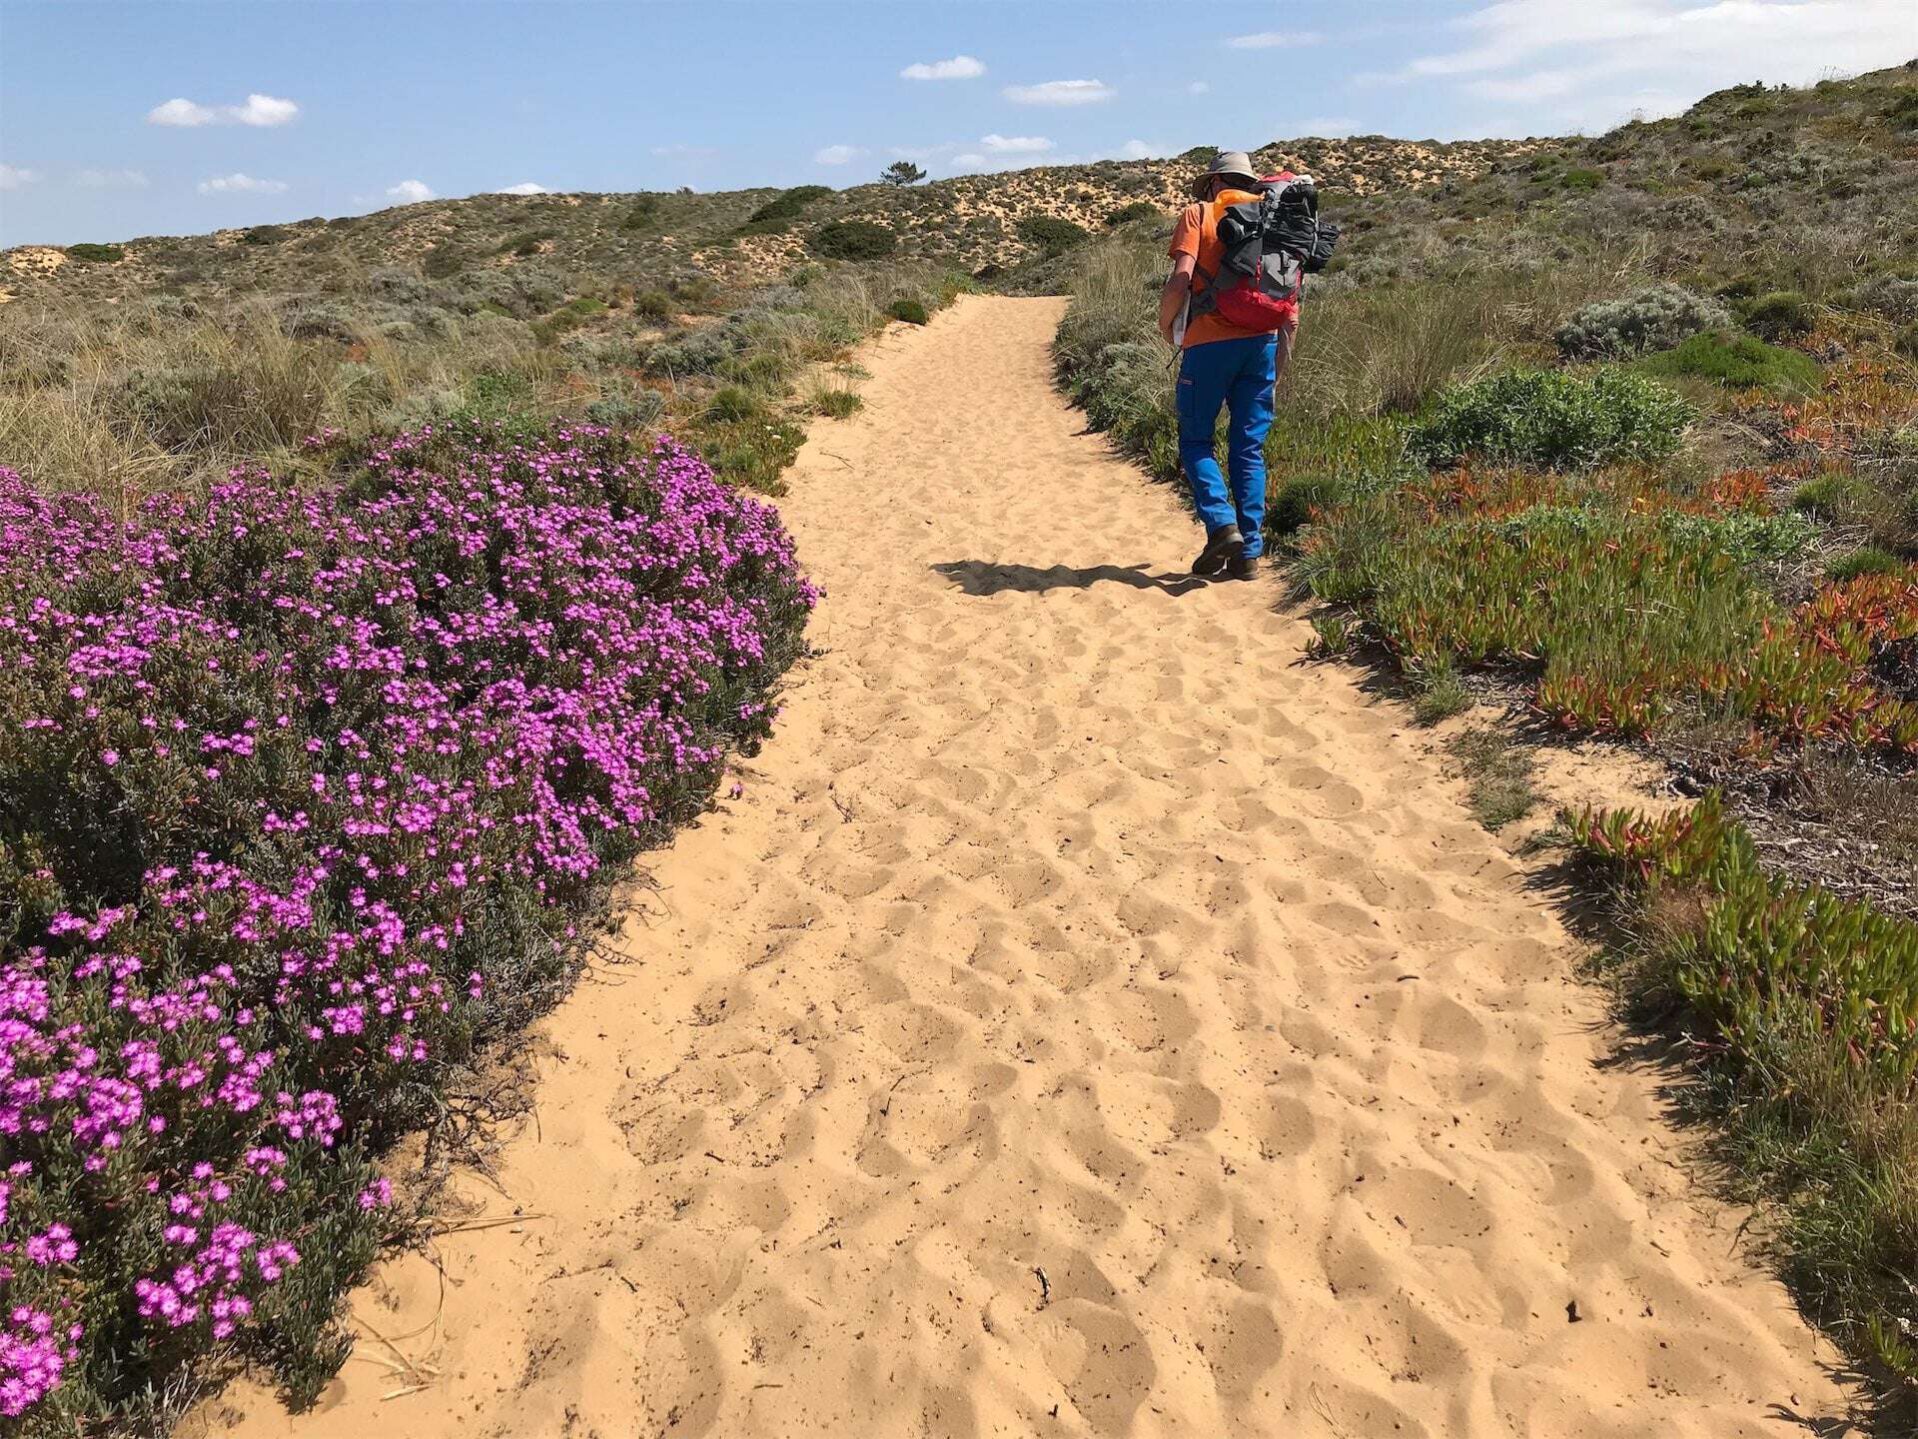 Een wandelaar met een rugzak volgt een zanderig pad door de duinen van de Rota Vicentina in Portugal. Het pad is omzoomd door levendige paarse bloemen en diverse kustvegetatie, die een kleurrijk contrast bieden tegen het gouden zand en de blauwe lucht